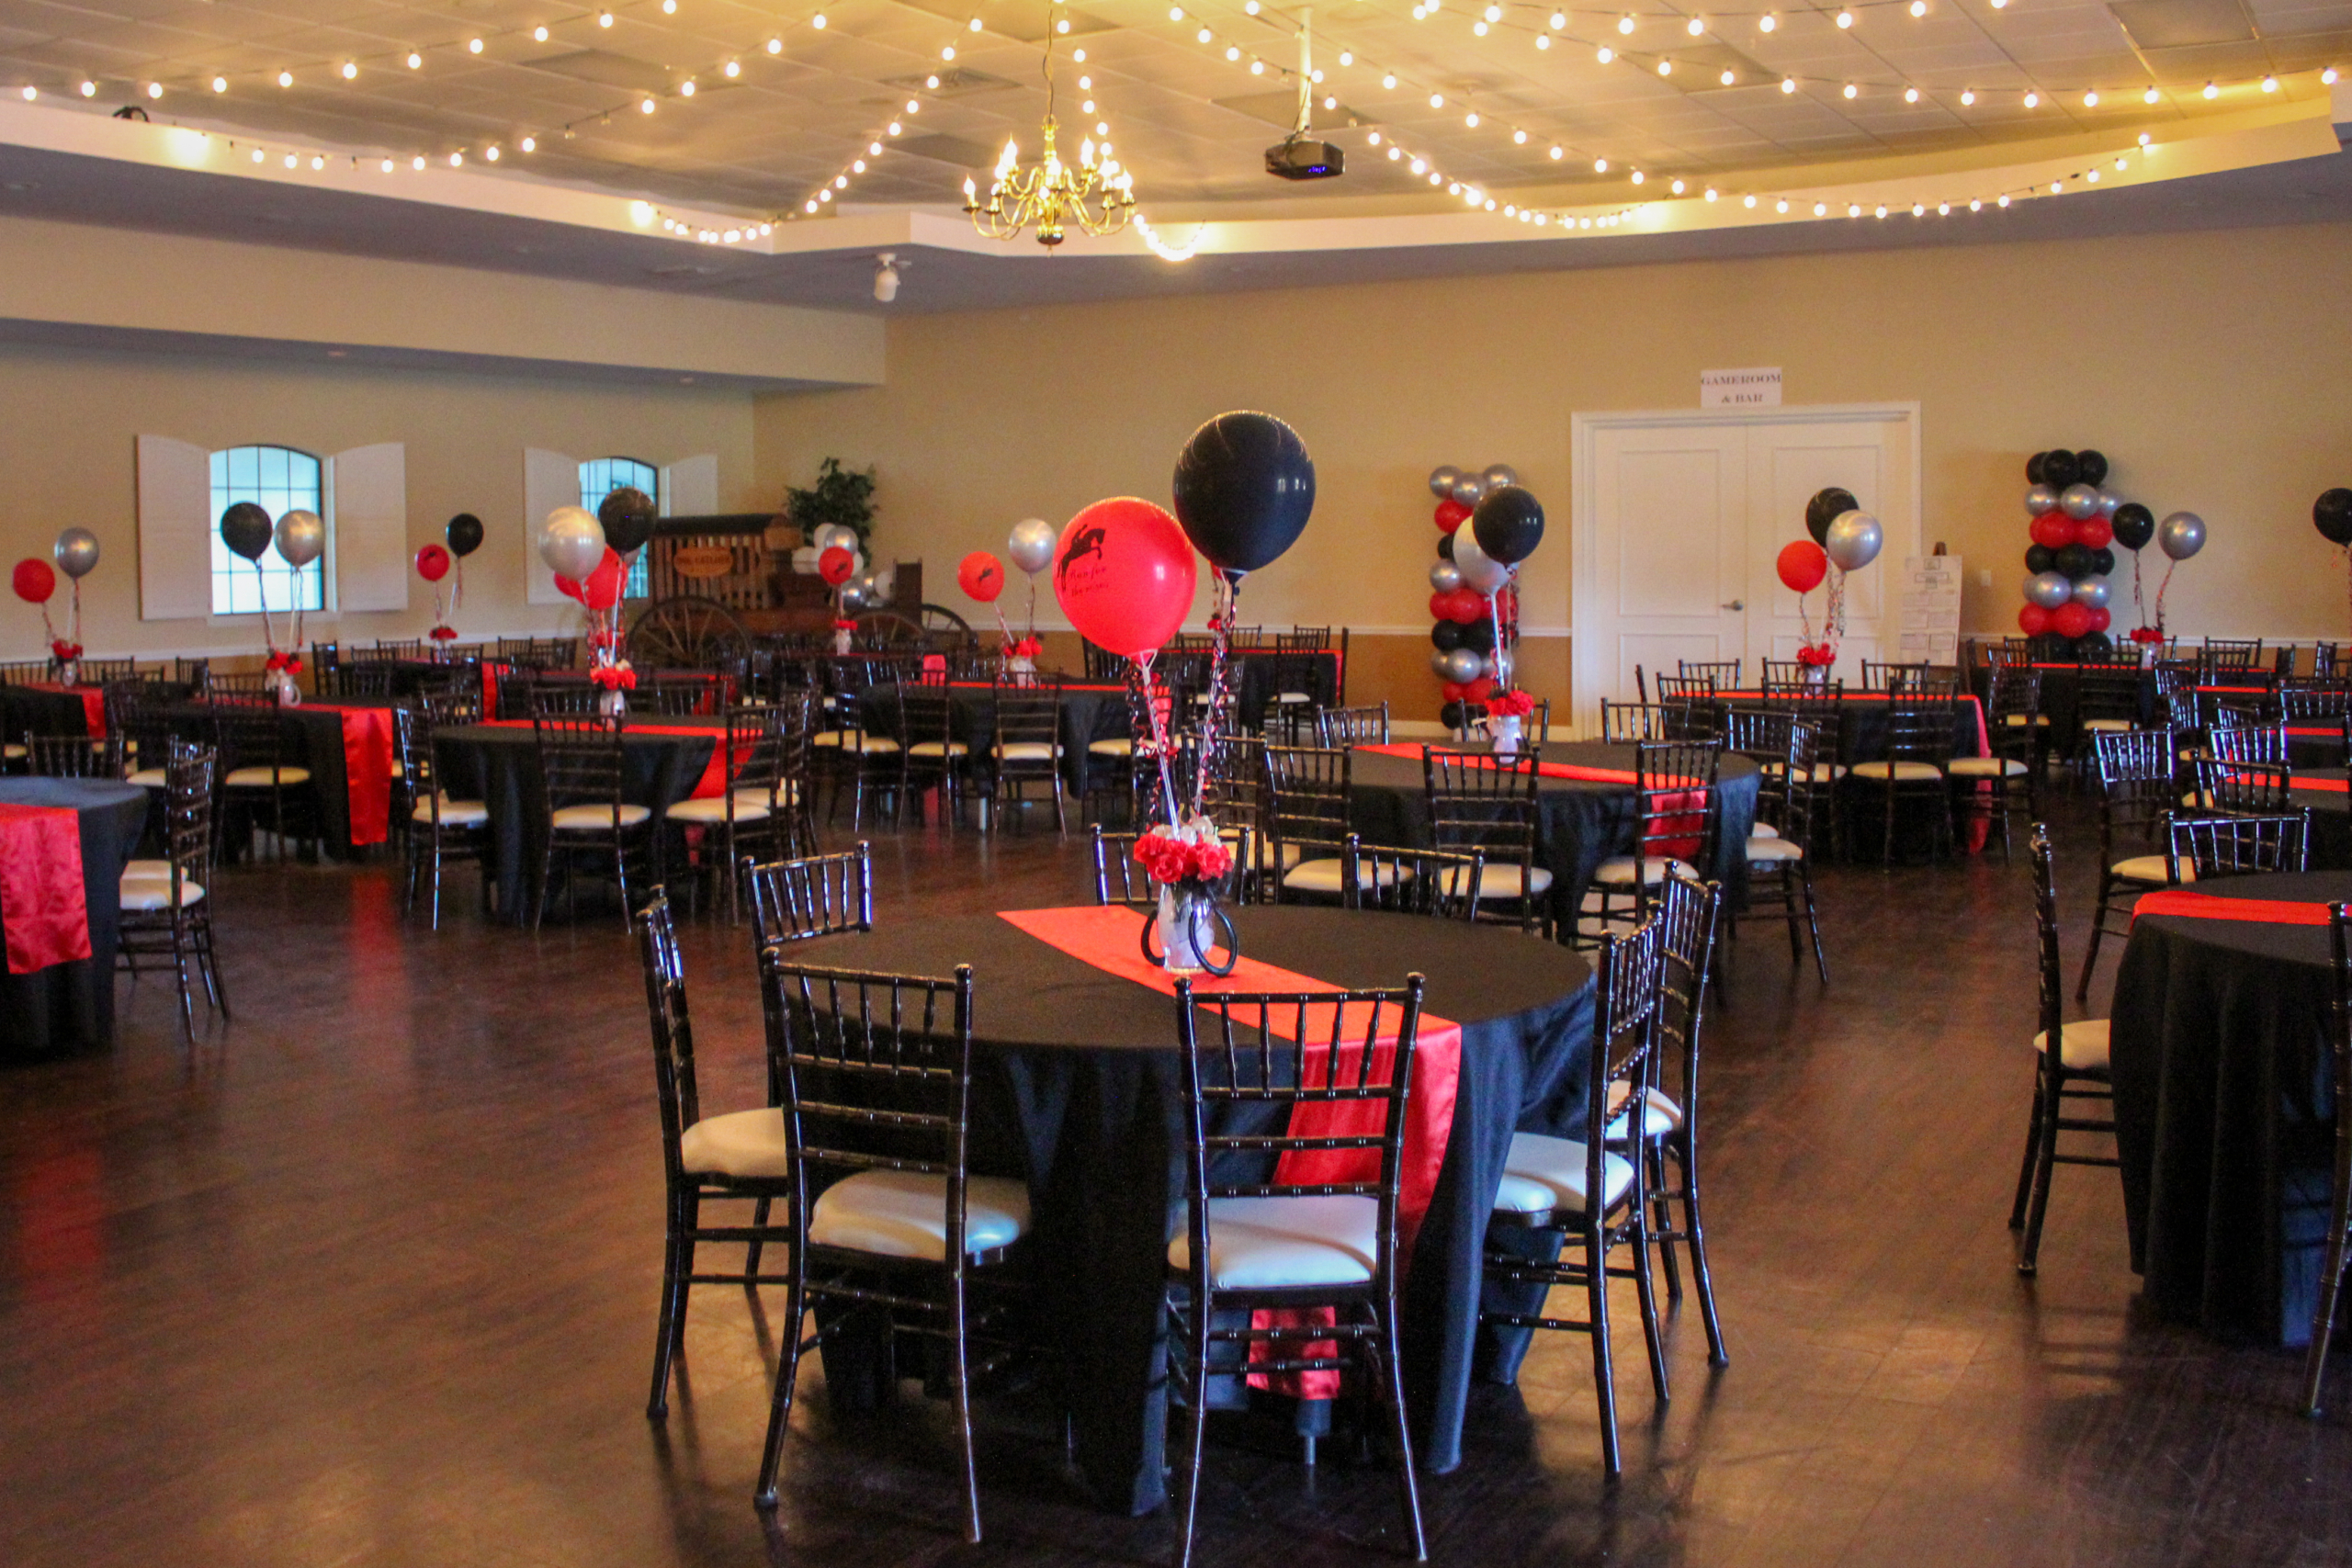 The Oak Room Banquet room at the Grand Oaks Resort